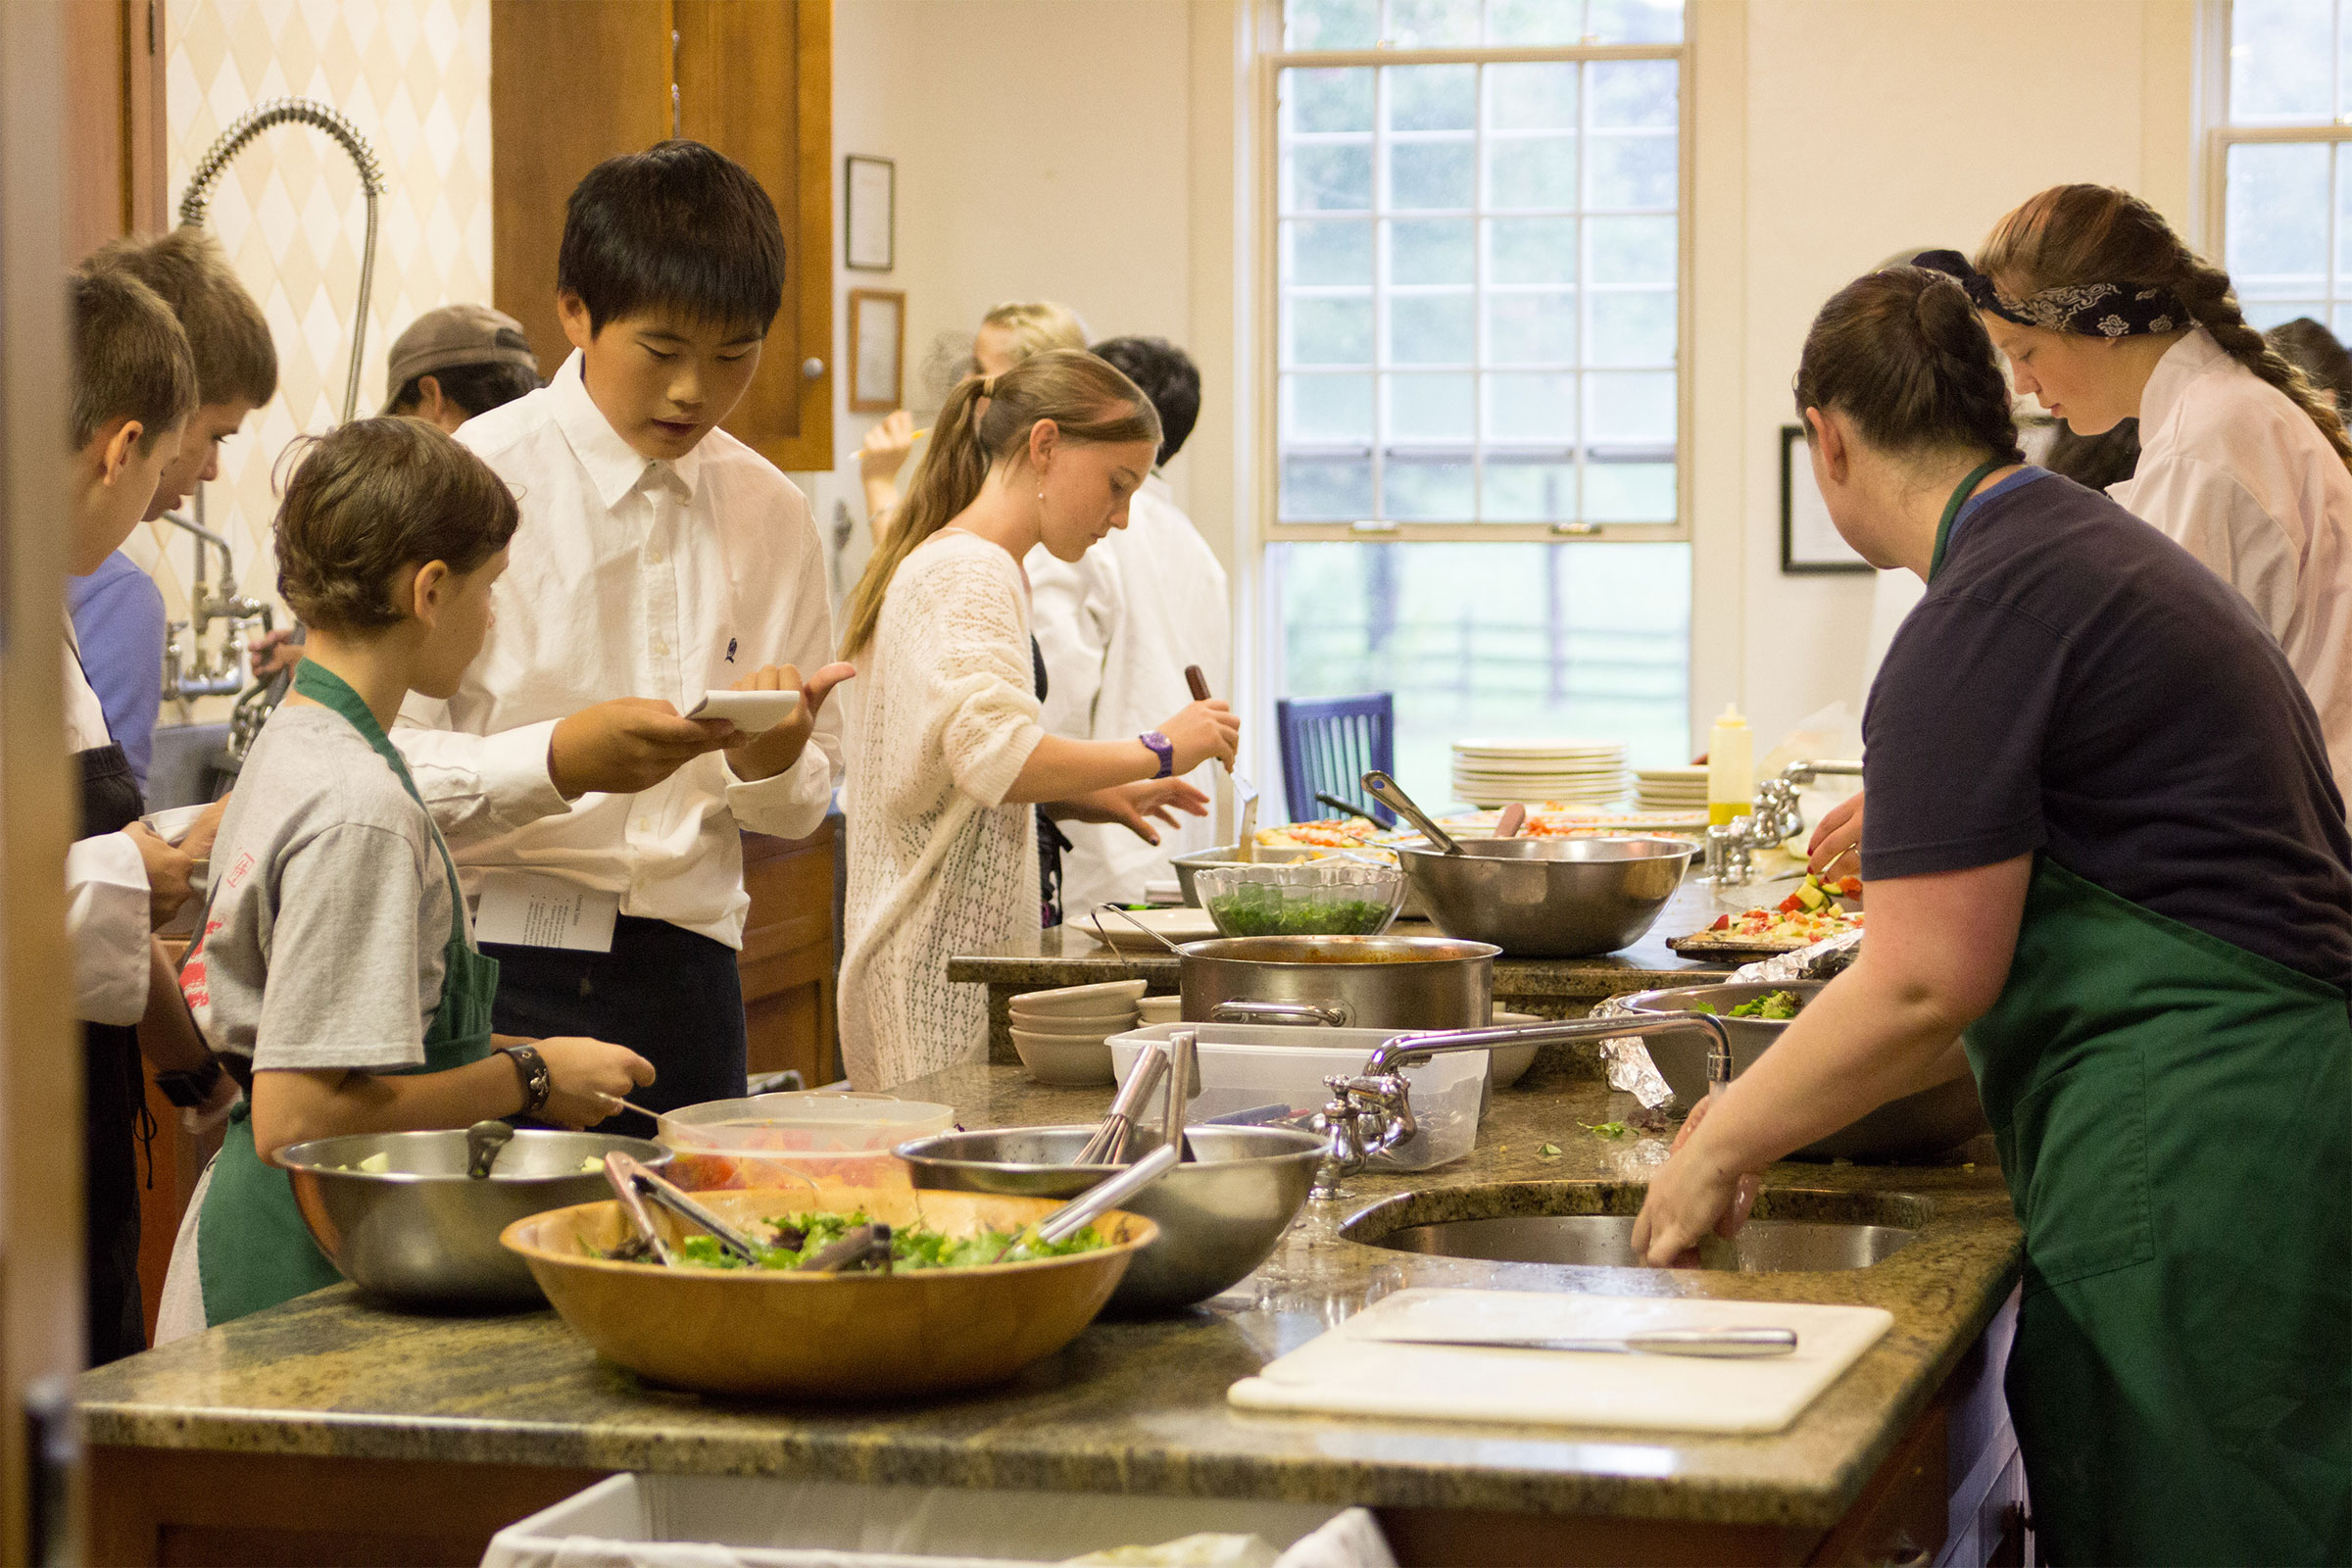 Montessori Adolescent class preparing food in kitchen